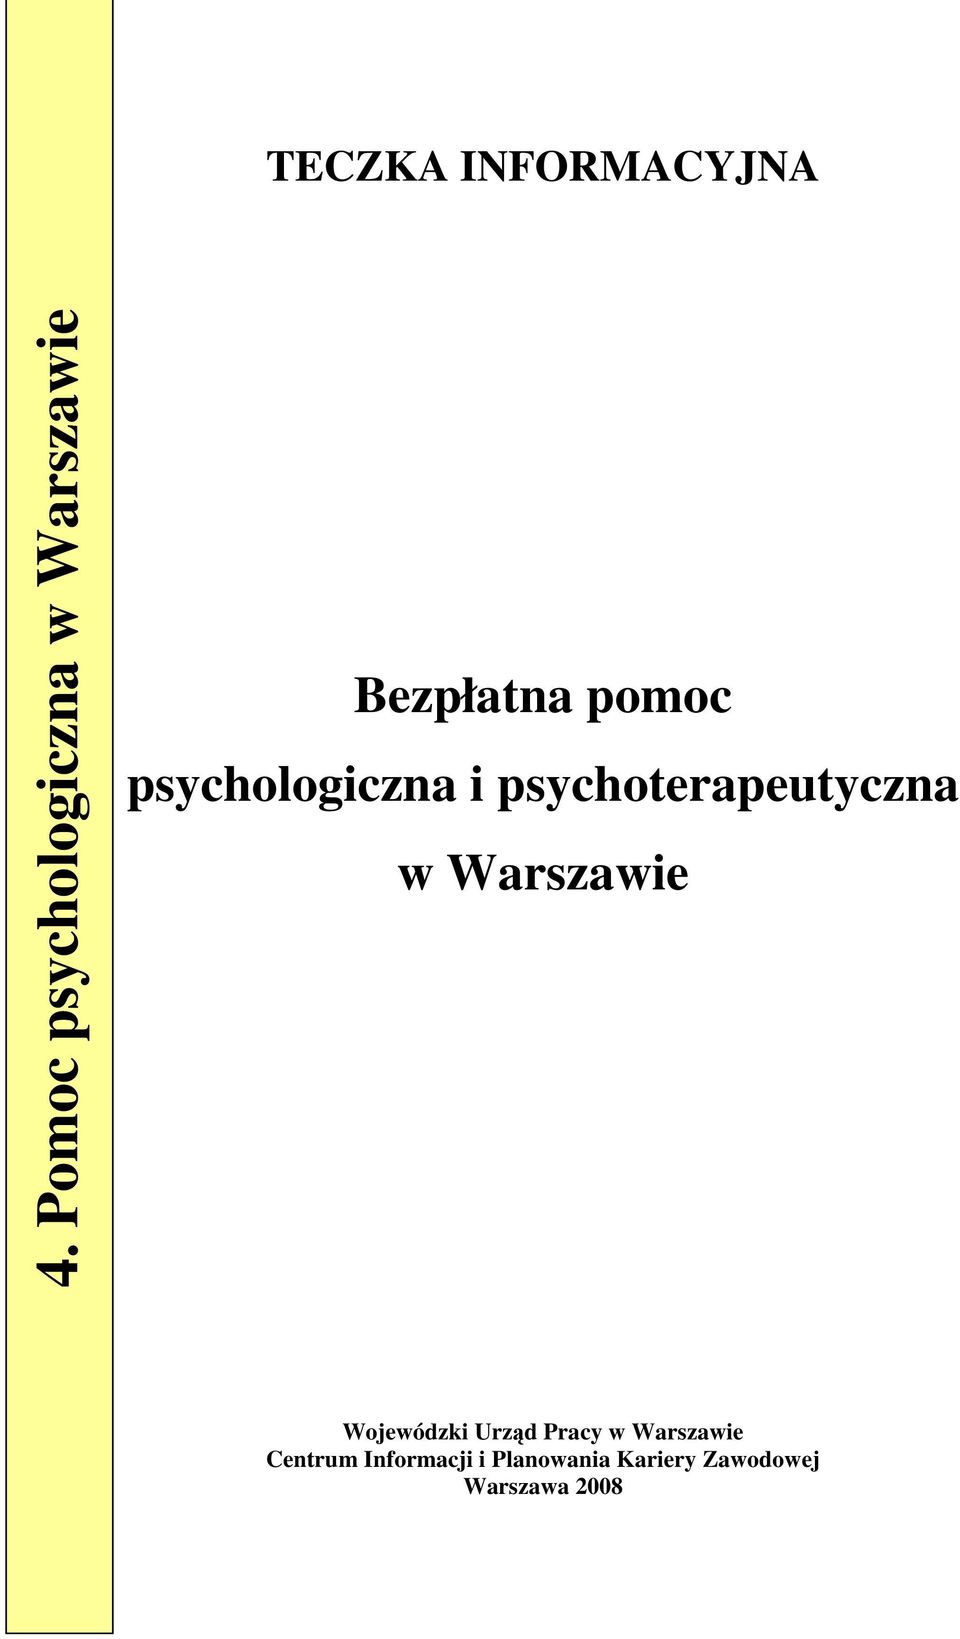 psychologiczna i psychoterapeutyczna w Warszawie